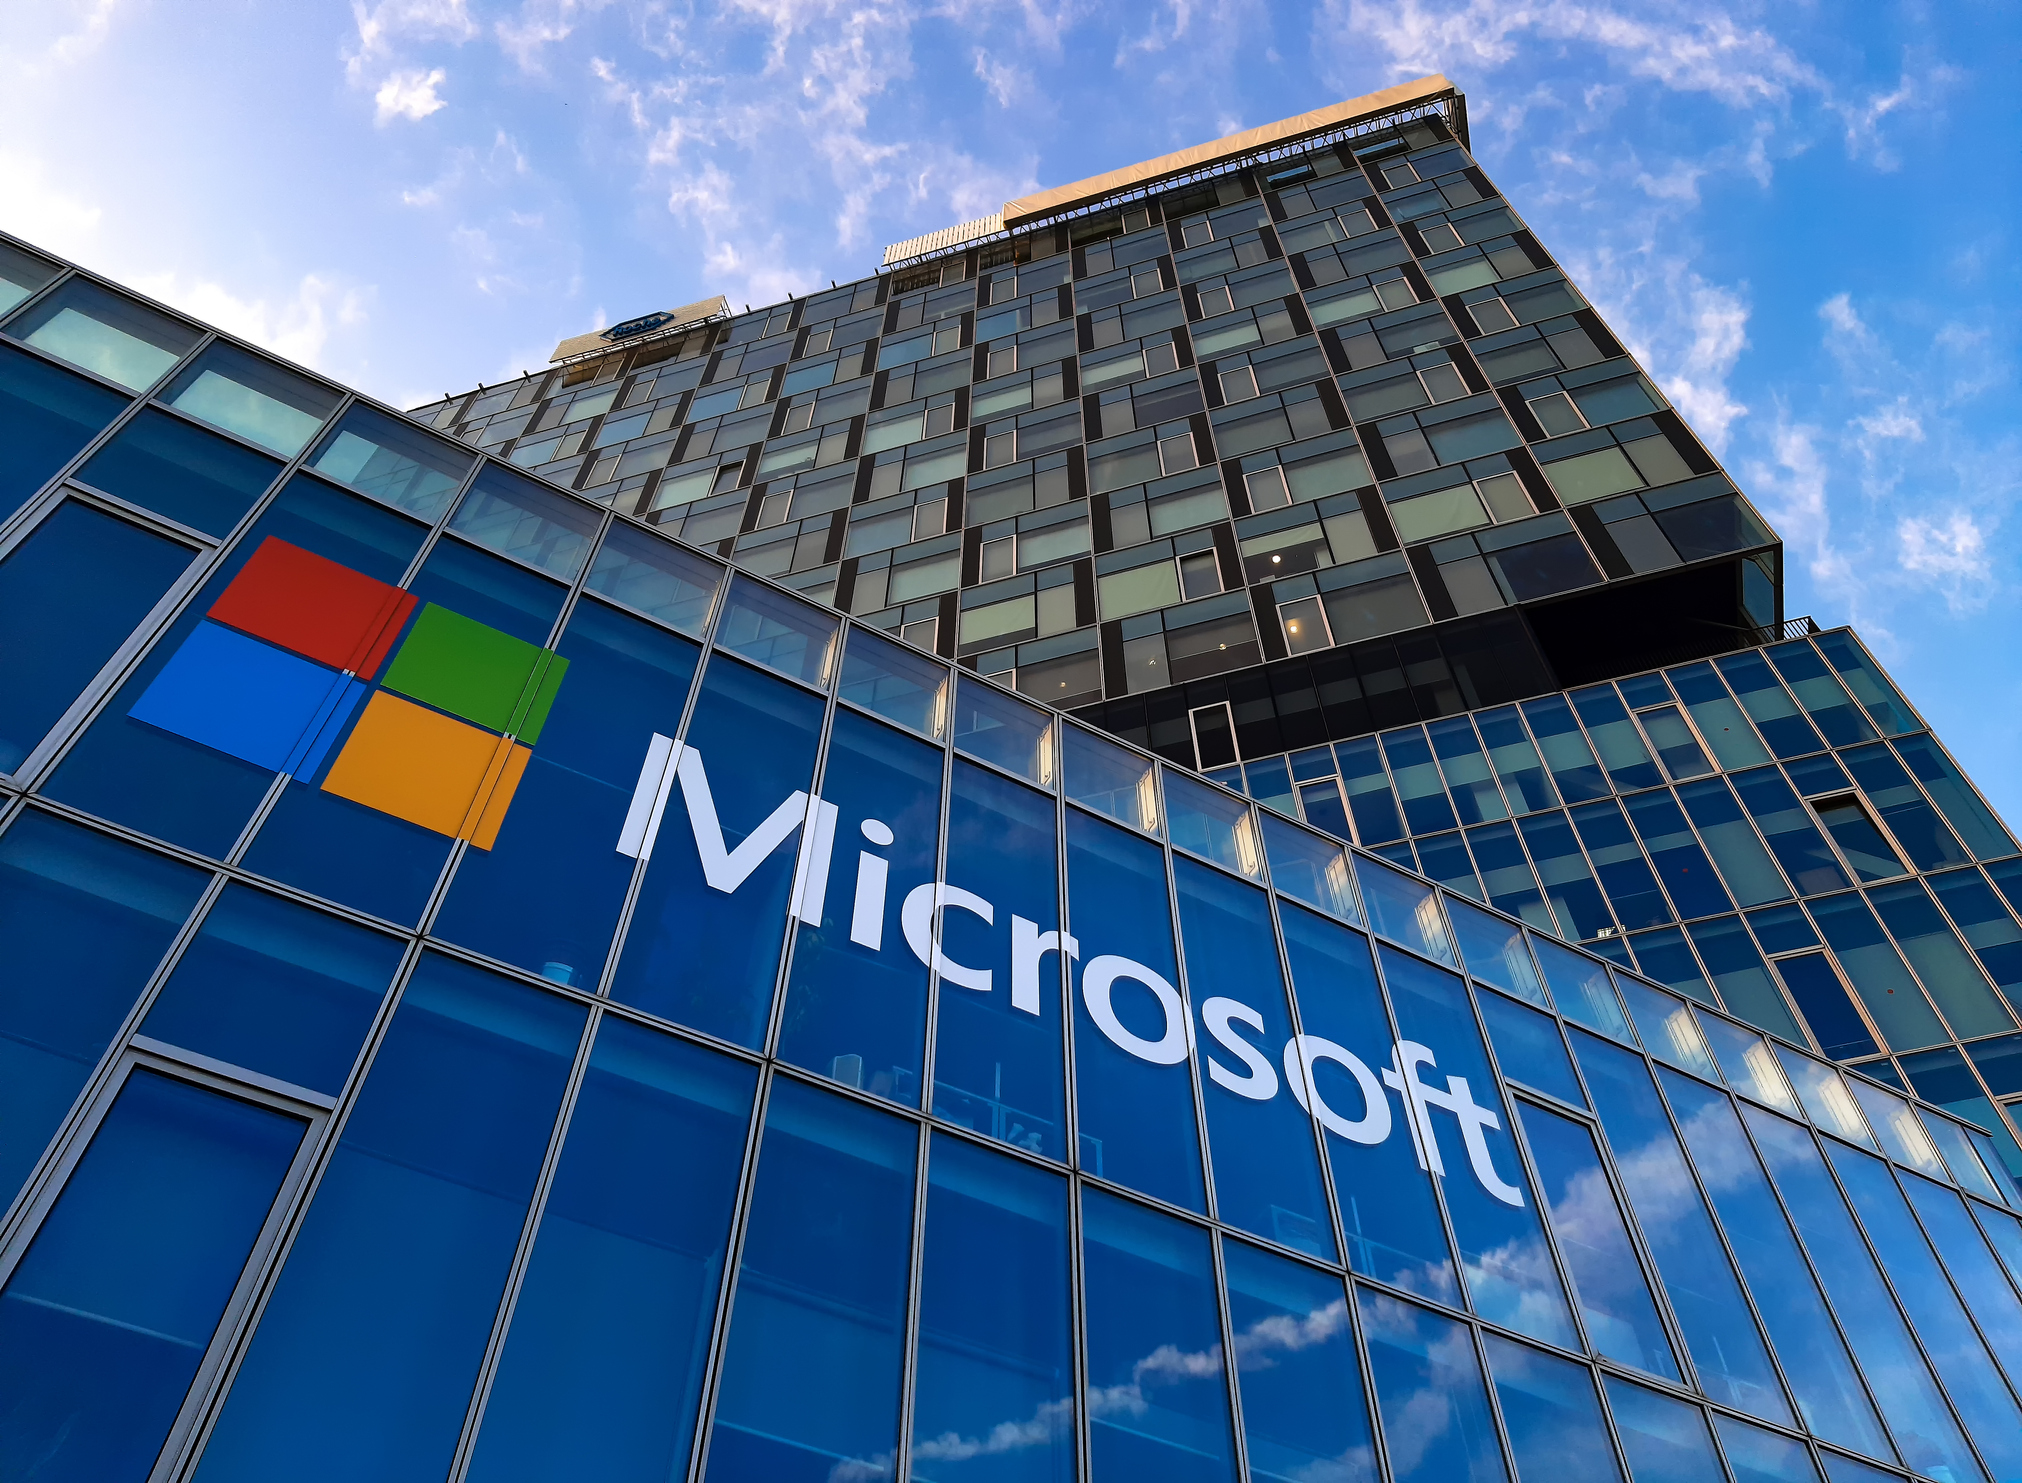 Le deal à 69 milliards de Microsoft fragilisé par les accusations de harcèlement chez Activision